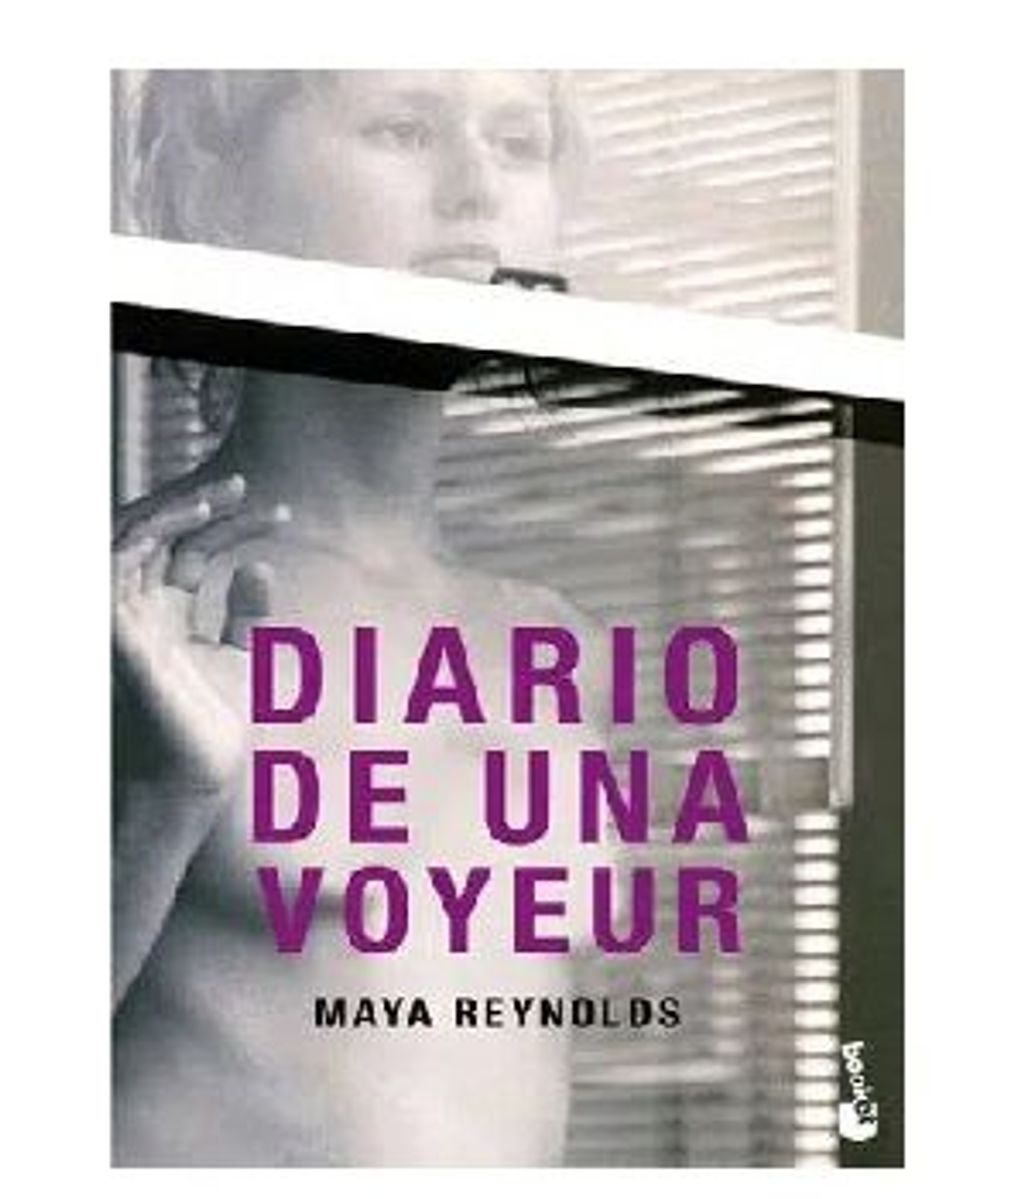 Diario de una voyeur de Maya Reynolds